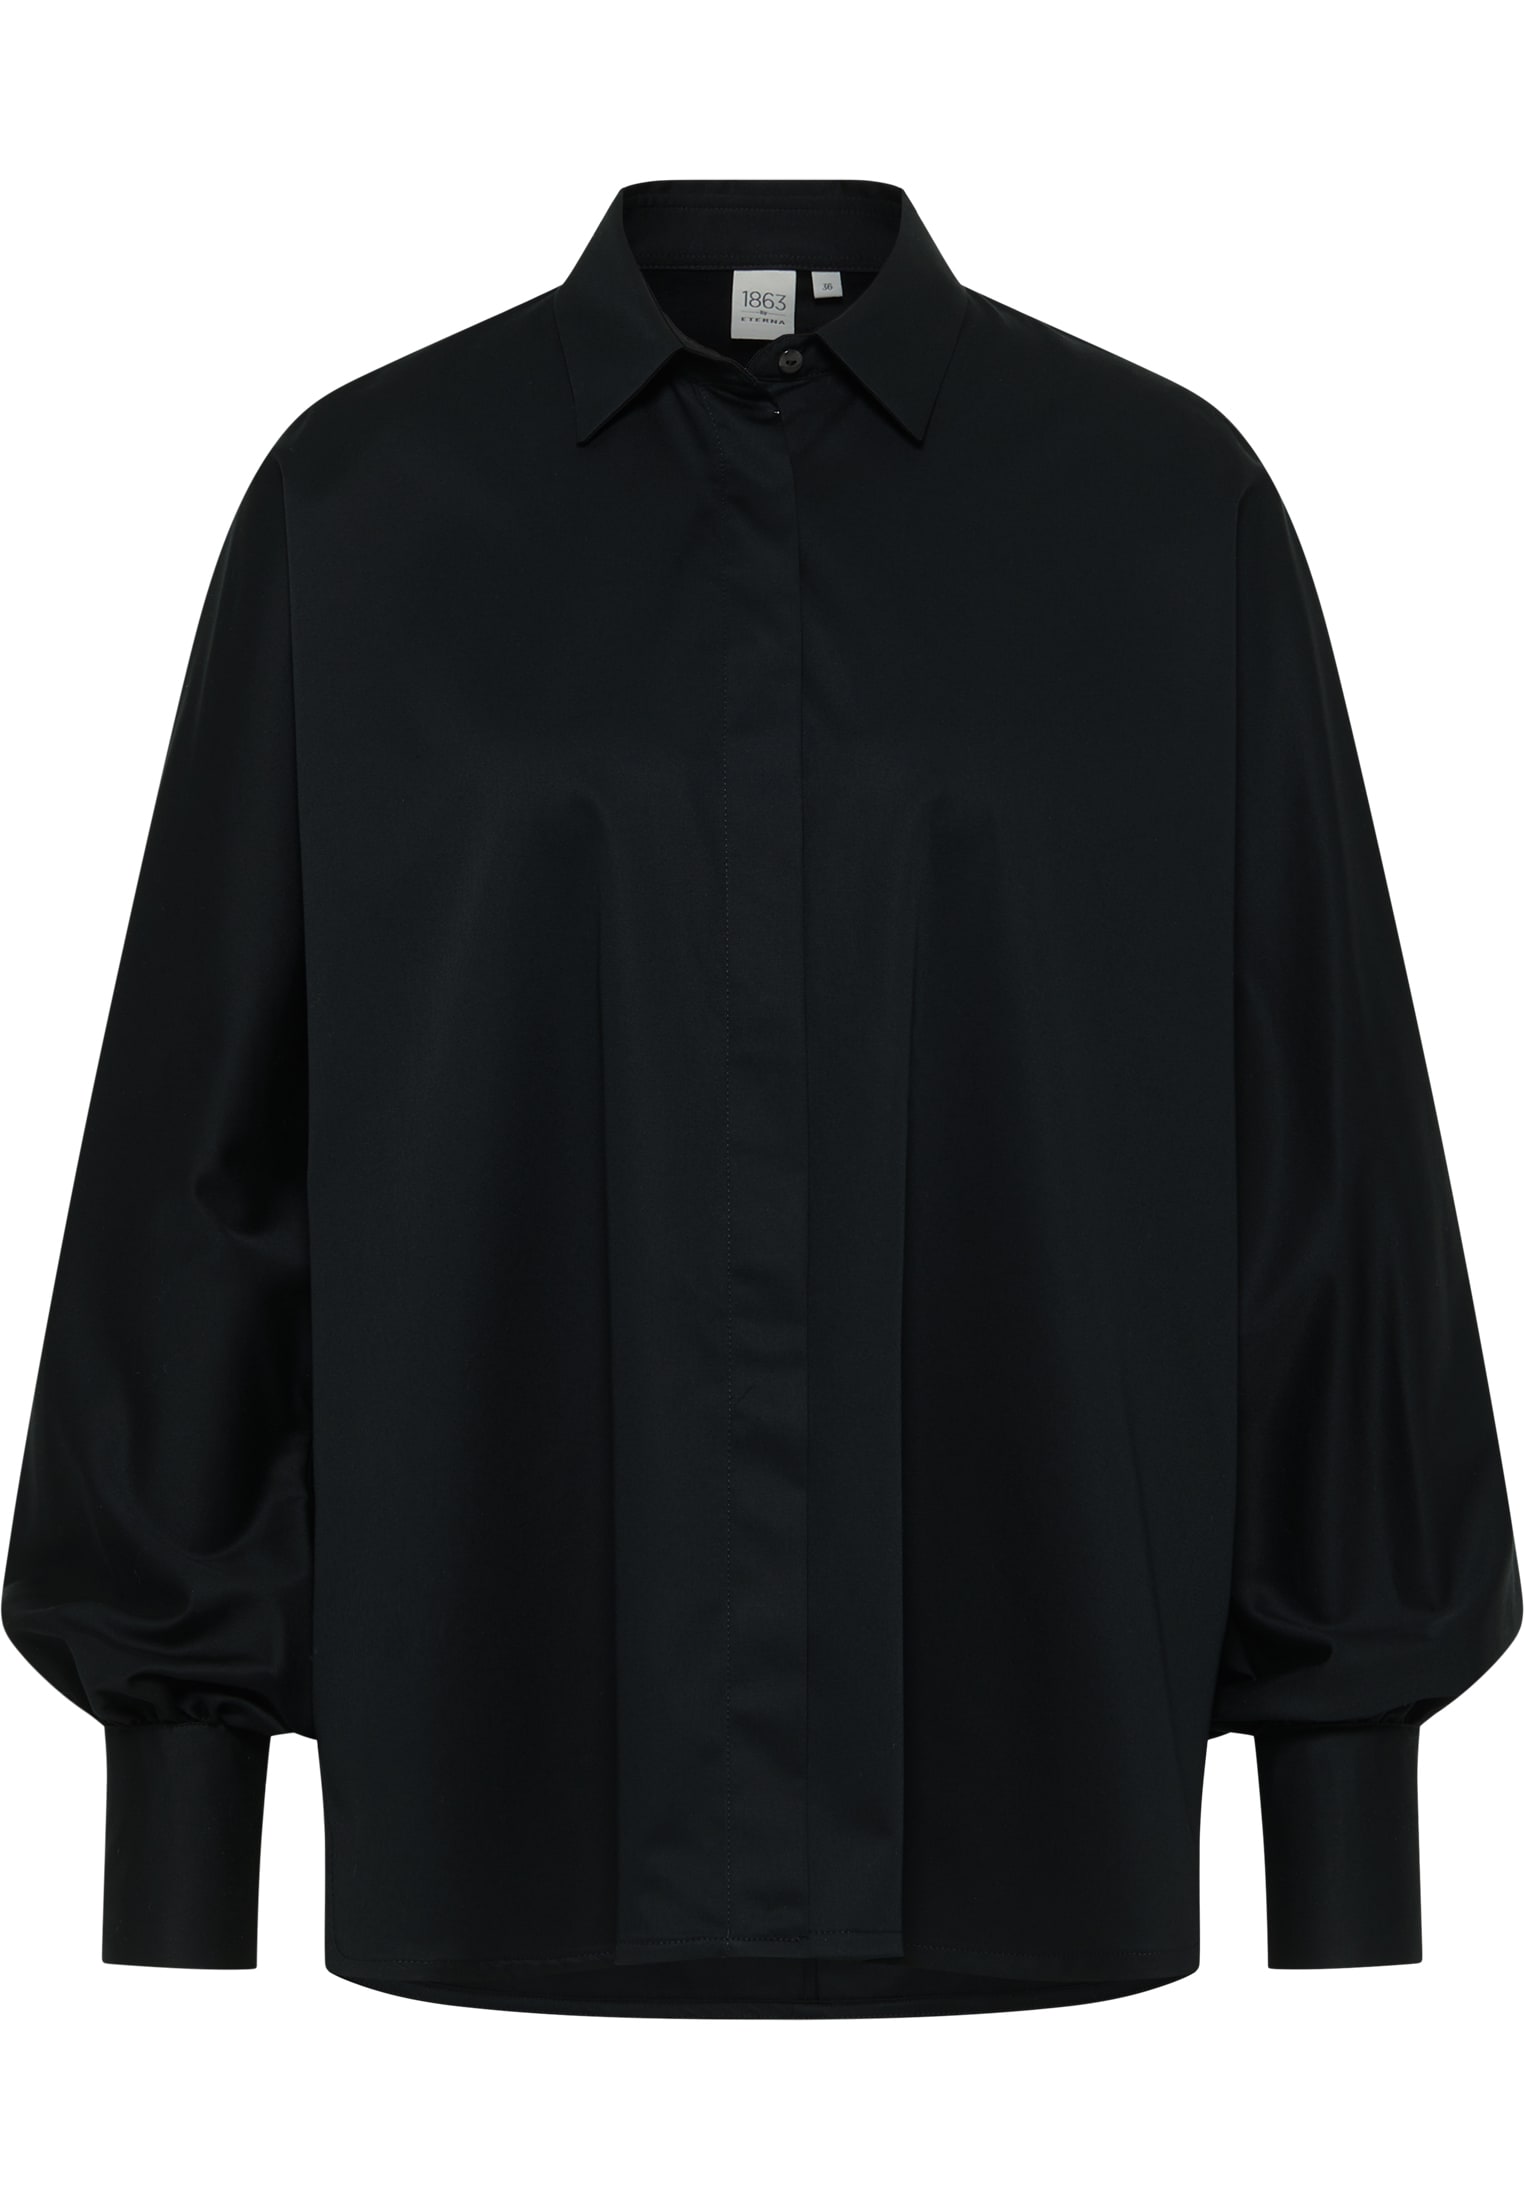 Satin Shirt Bluse 2BL04026-03-91-40-1/1 | | unifarben | schwarz Langarm | 40 in schwarz